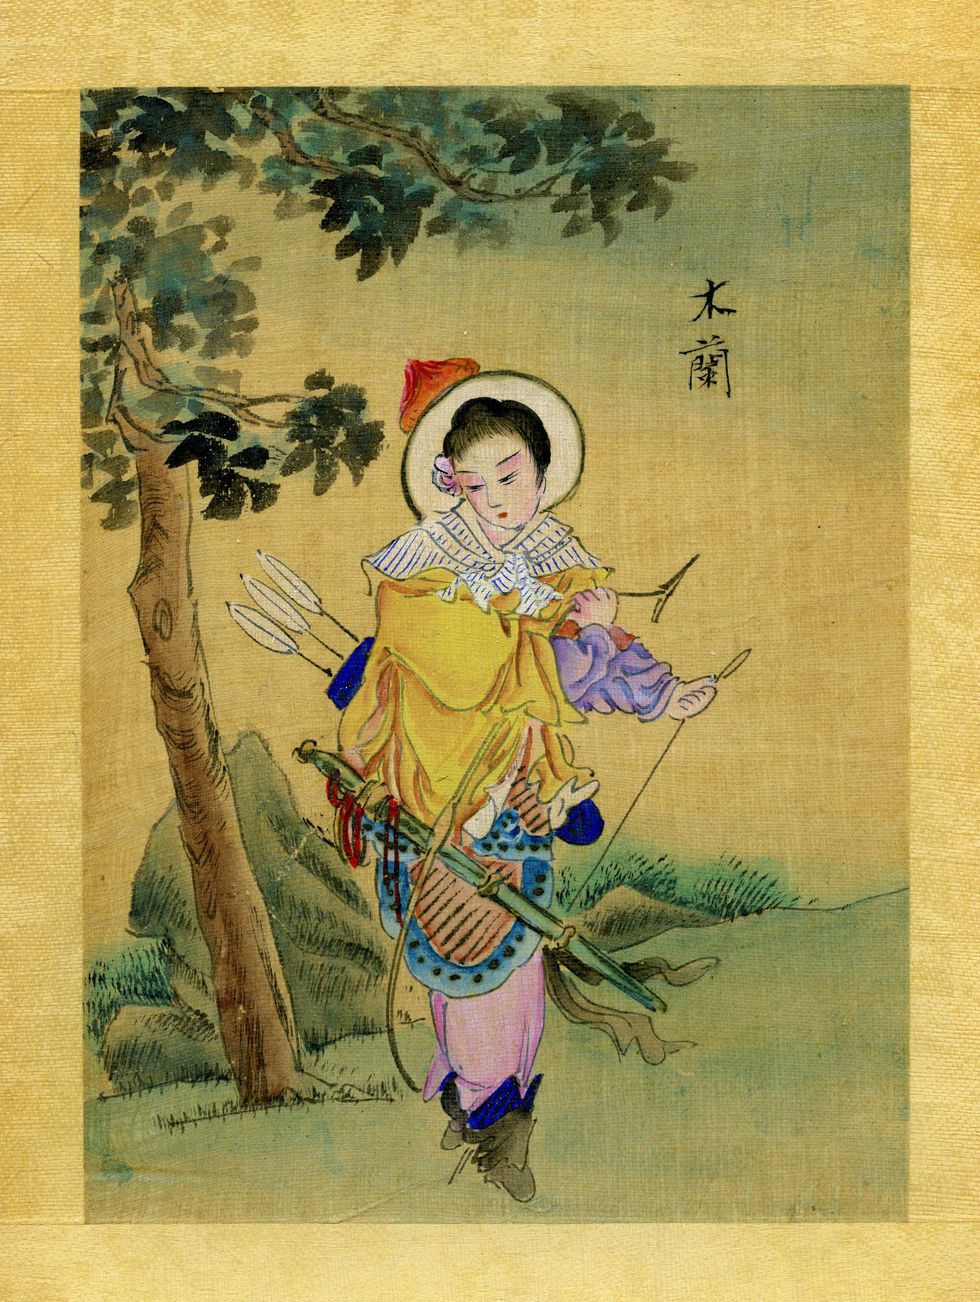 Hua Mulan een legendarische krijgster uit de Chinese folkloreis hier afgebeeld op een negentiendeeeuwse illustratie op zijde In het verhaal van Mulan wordt verteld hoe de heldin zich vermomd als man bij het keizerlijke leger aandient en daar in de vechtkunsten wordt getraind Ze groeit uit tot een vereerd krijgster maar wijst elk eerbetoon af en keert terug naar haar eenvoudige geboortedorp Geschiedkundigen betwijfelen of het verhaal is gebaseerd op historische feiten